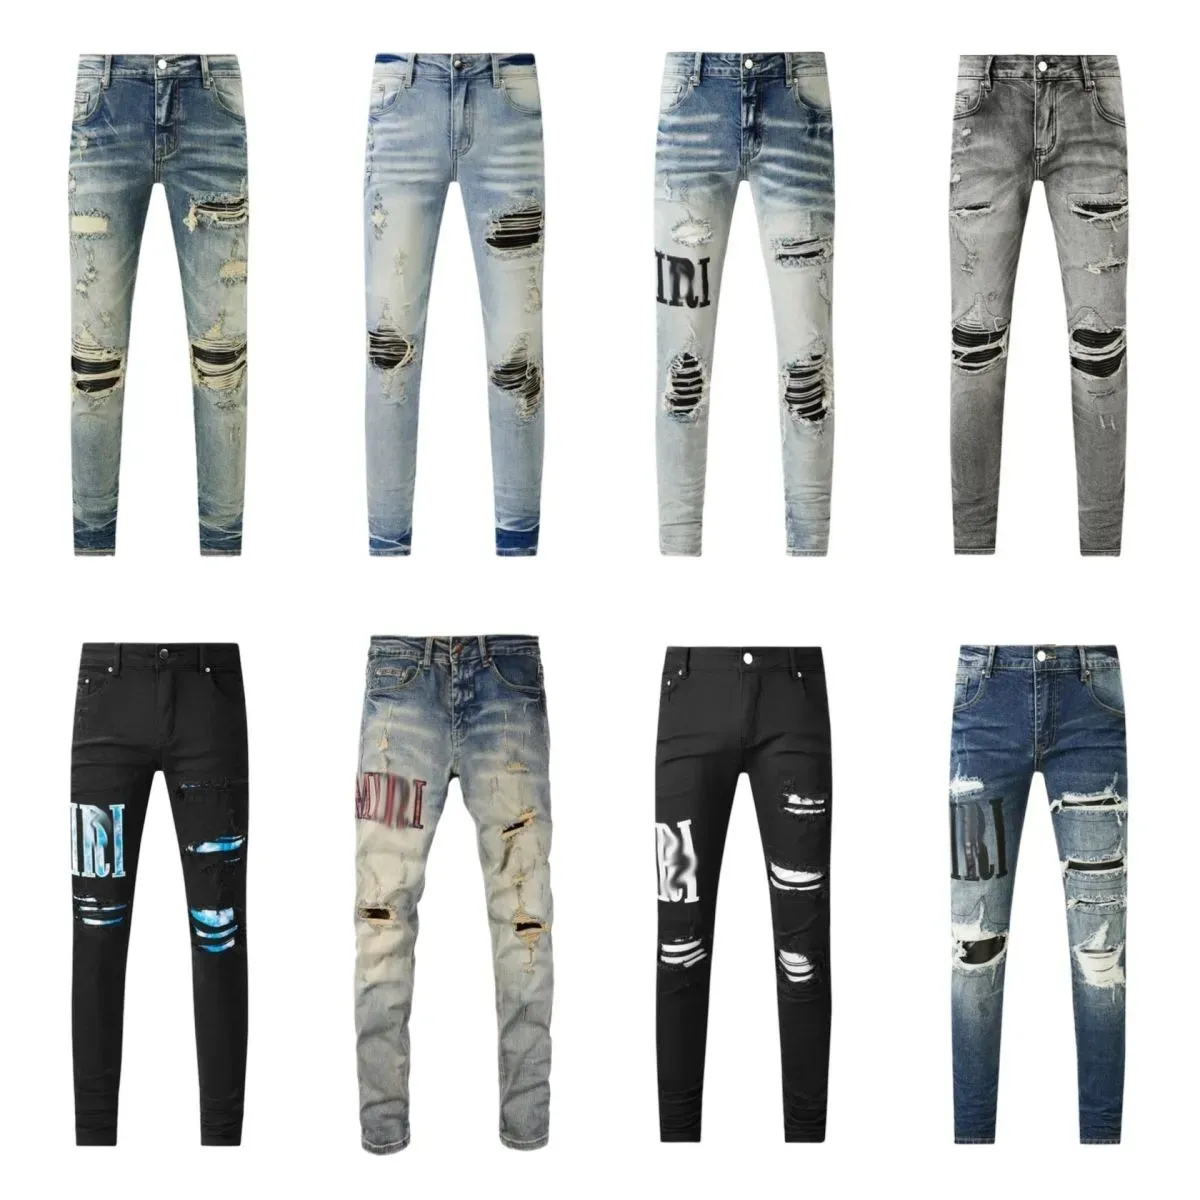 Jeans jeans jeans pour hommes de marque de marque en jeans noirs pantalons déchirés auto-culture respirants jeans populaires jeans empilés jeans pantalon l6